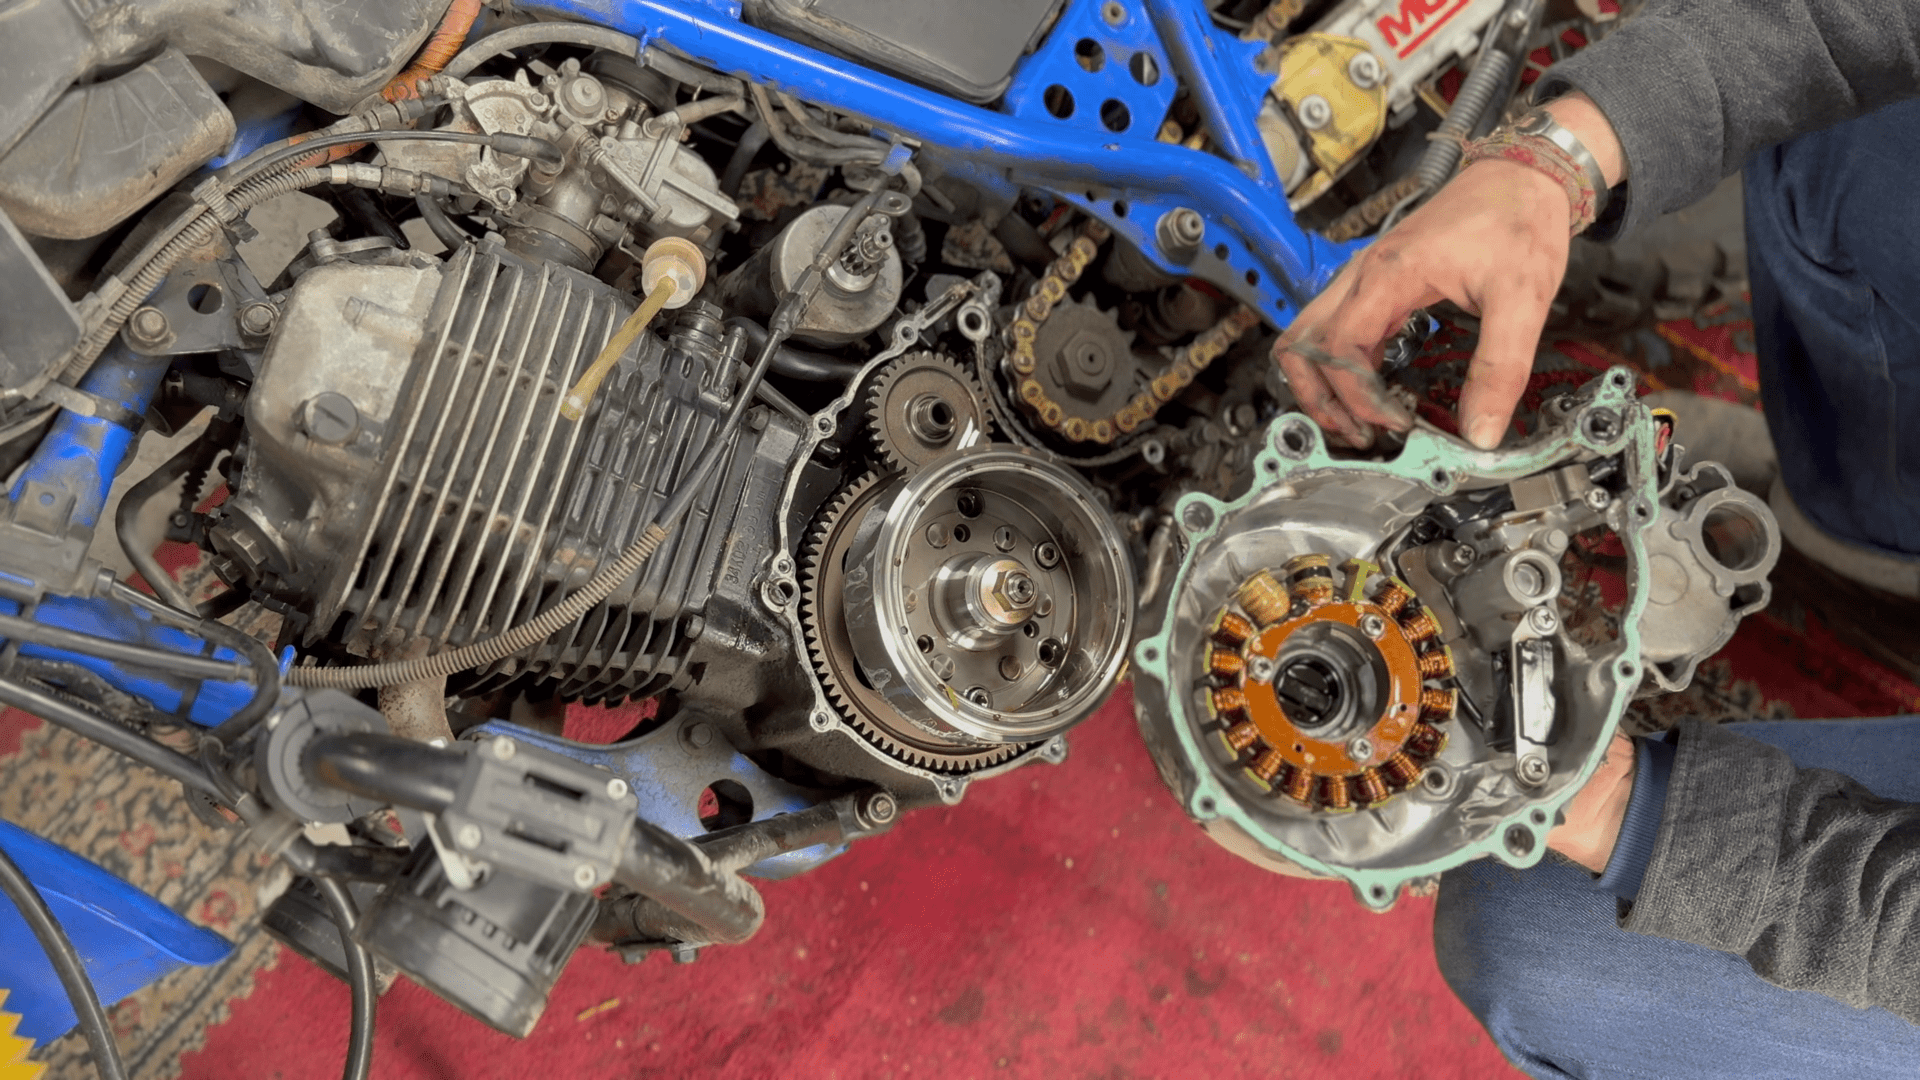 Entretien et réparation de la Yamaha 600 XTZ “Ténéré”